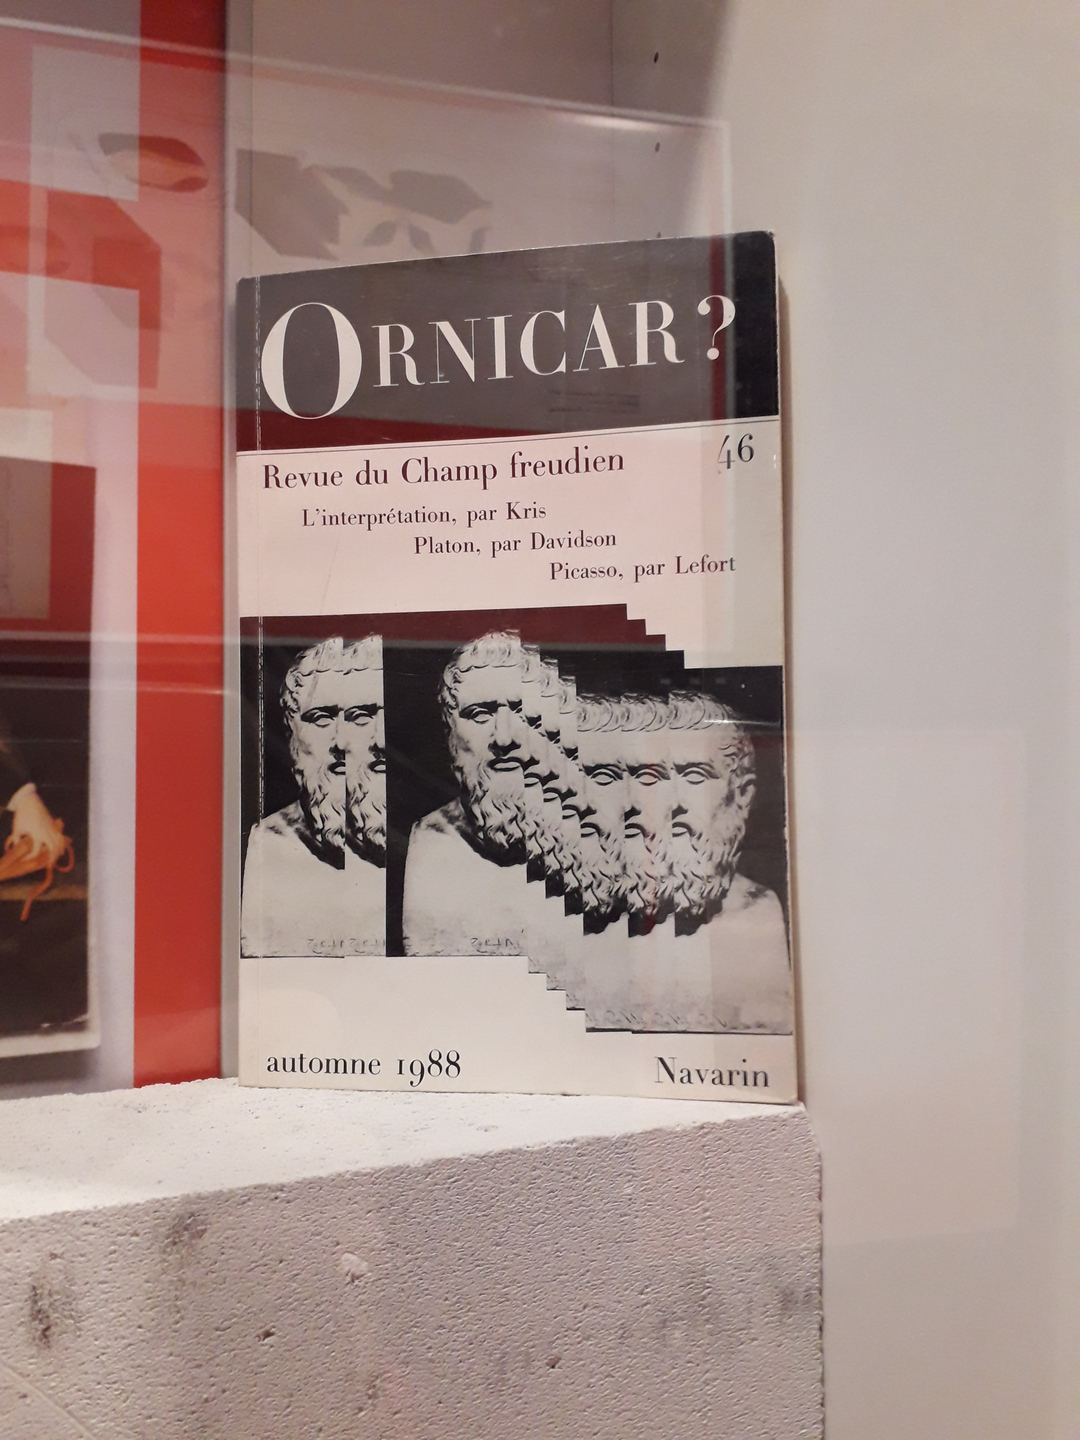 Image 32 : Couverture d'un livre intitulé Ornicar? avec un visuel de statue dupliqué et décalé